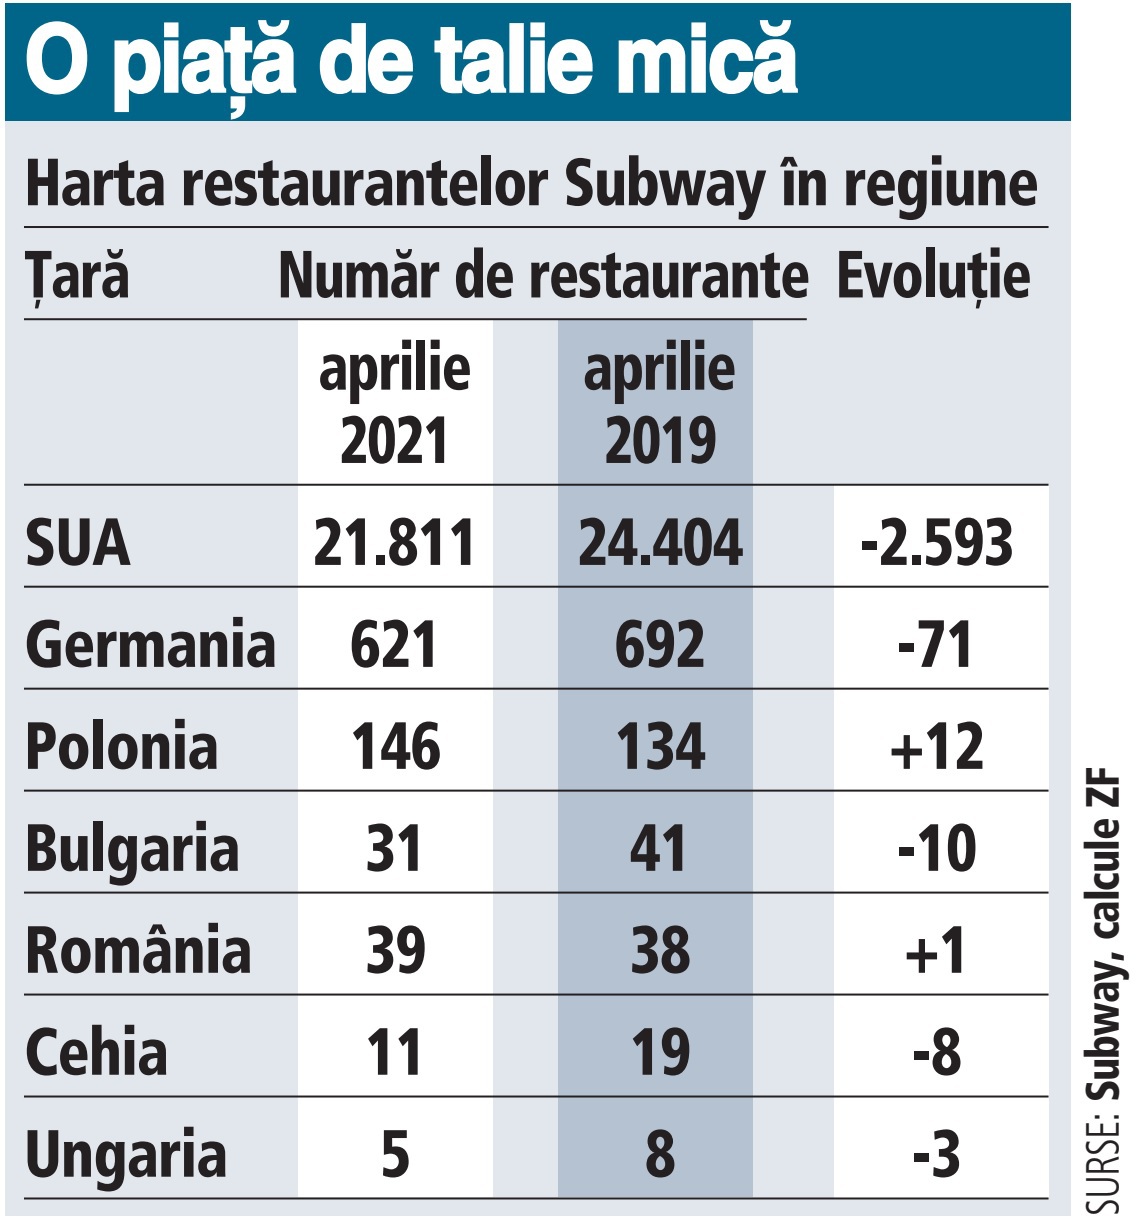 Americanii de la Subway bat pasul pe loc şi rămân la aproape 40 de restaurante în România după nouă ani de prezenţă, deşi la intrarea pe piaţă anunţau planuri mari. România şi Polonia sunt însă singurele ţări unde grupul nu a restructurat masiv operaţiunile